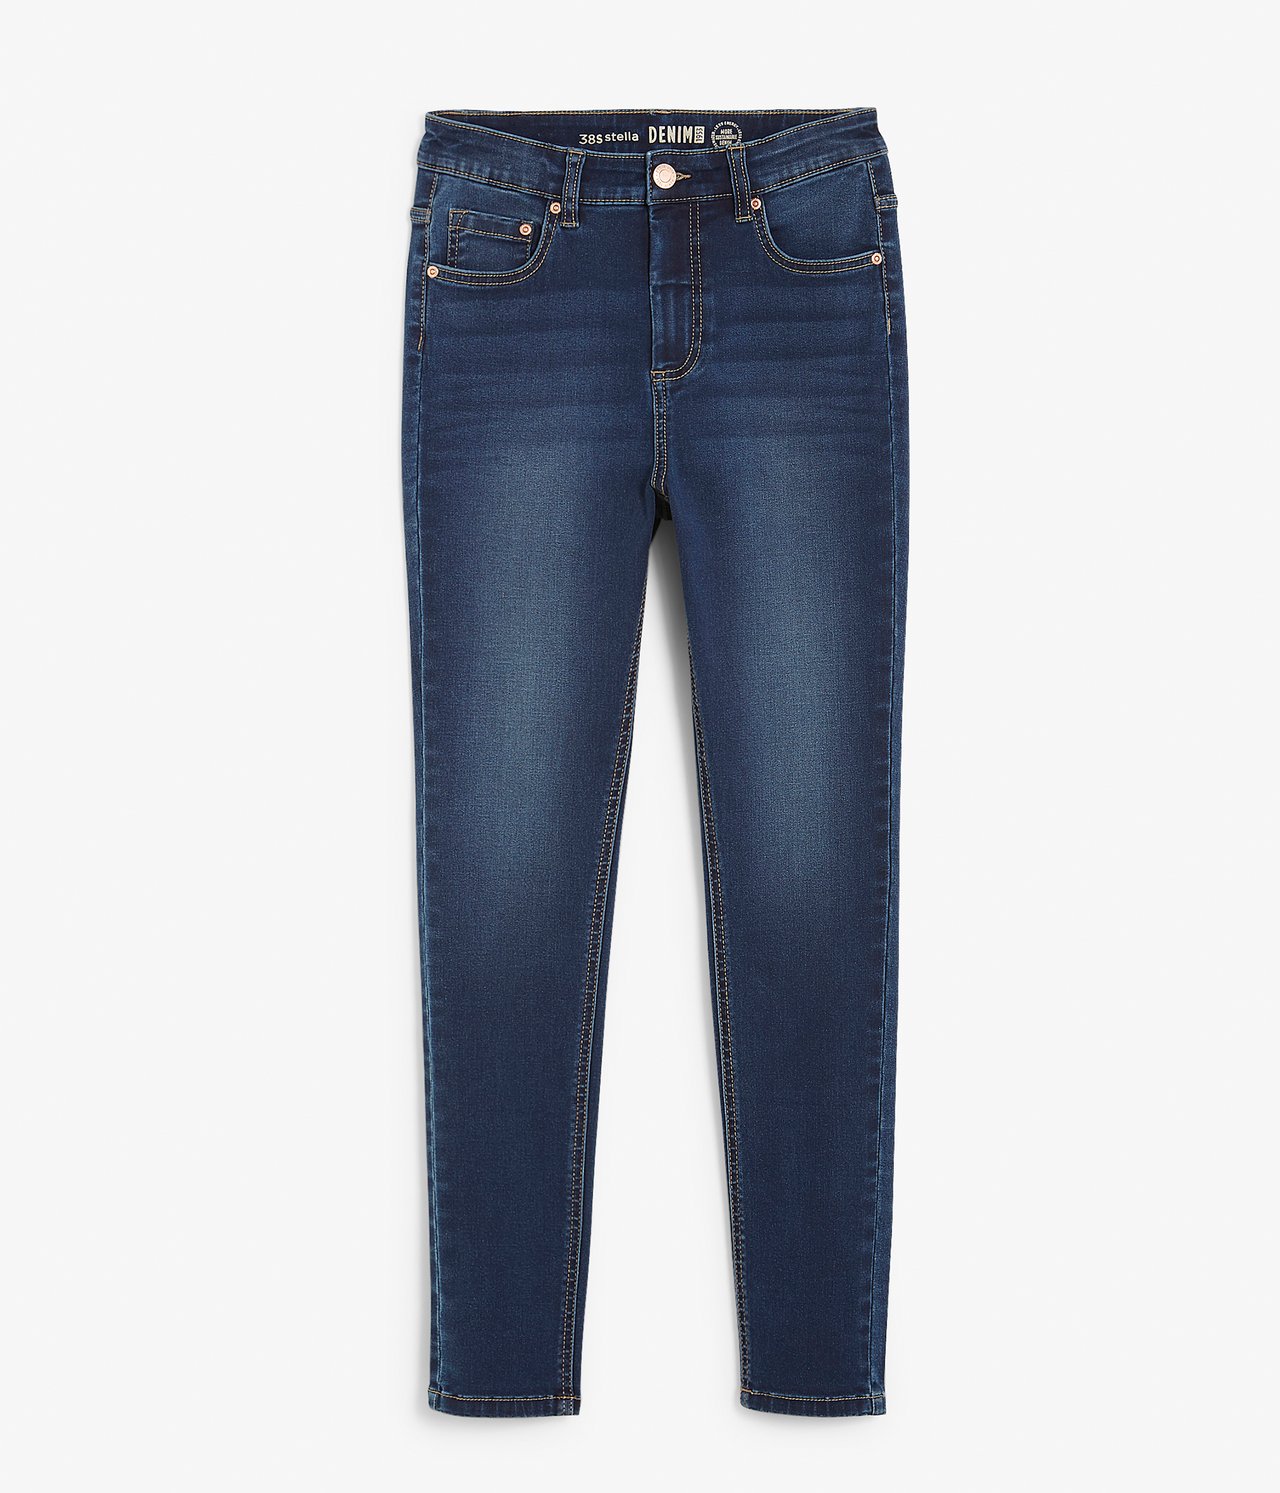 Super slim jeans short leg - Mørk denim - 5